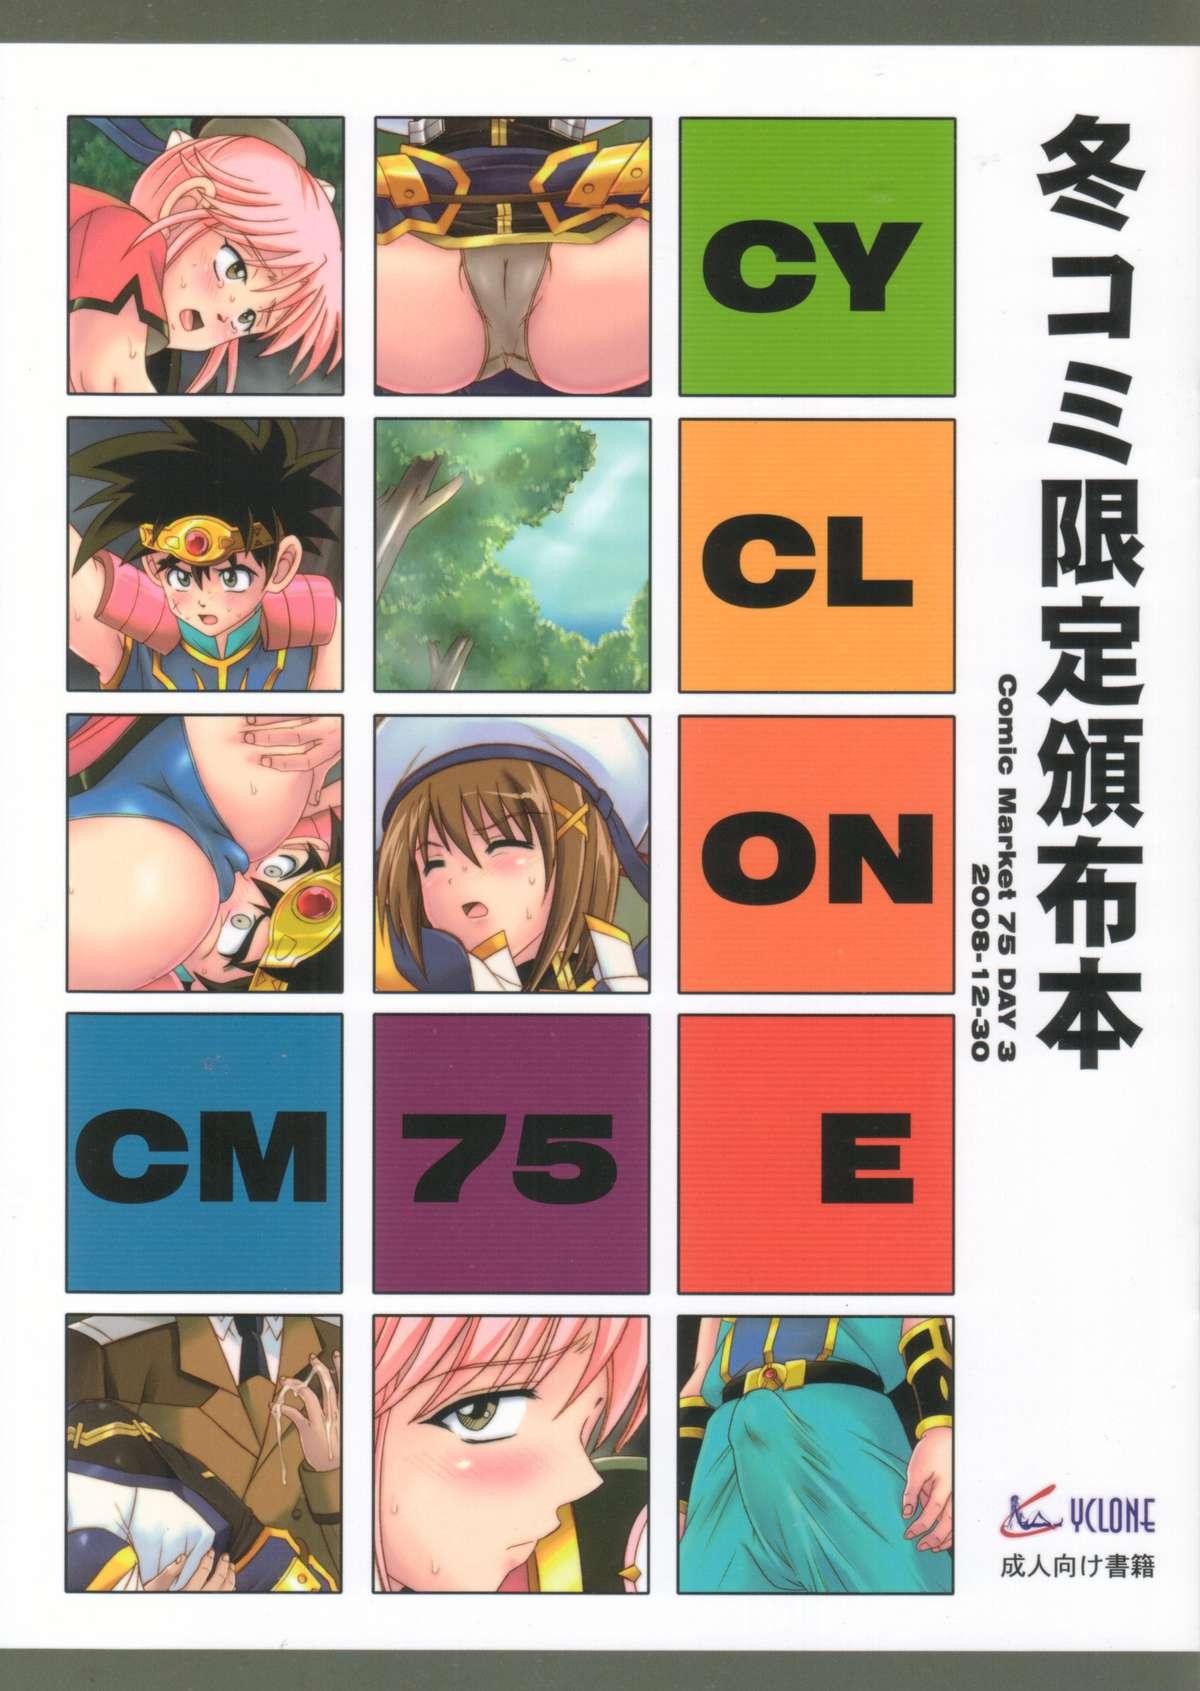 CYCLONE CM75 - Fuyu Comi Gentei Hanpu Bon 0